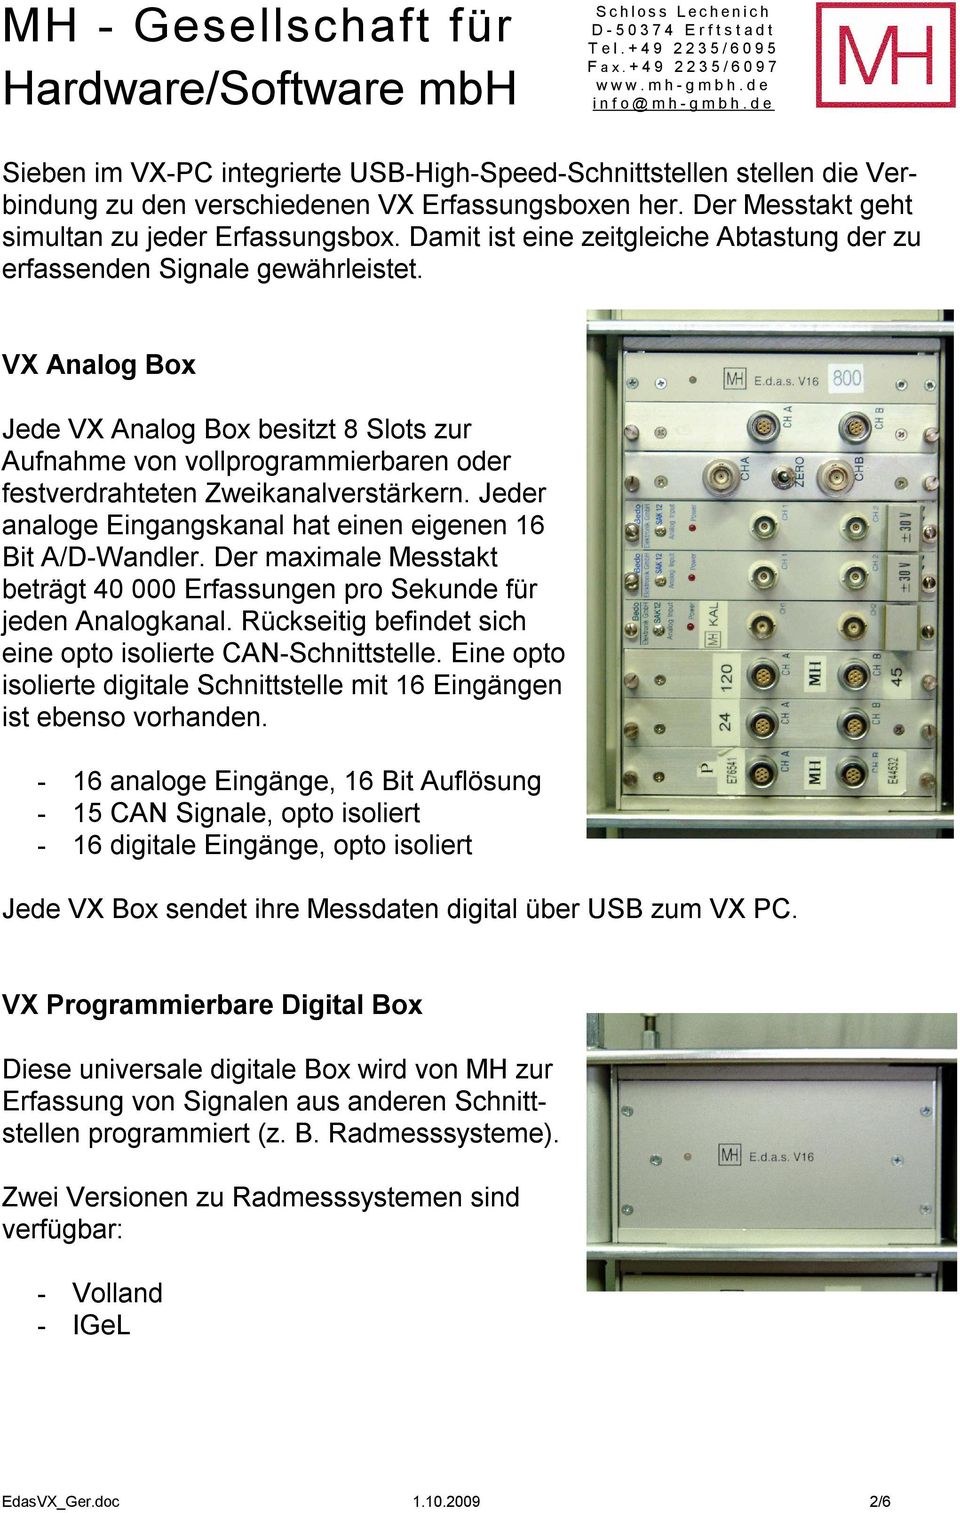 VX Analog Box Jede VX Analog Box besitzt 8 Slots zur Aufnahme von vollprogrammierbaren oder festverdrahteten Zweikanalverstärkern. Jeder analoge Eingangskanal hat einen eigenen 16 Bit A/D-Wandler.